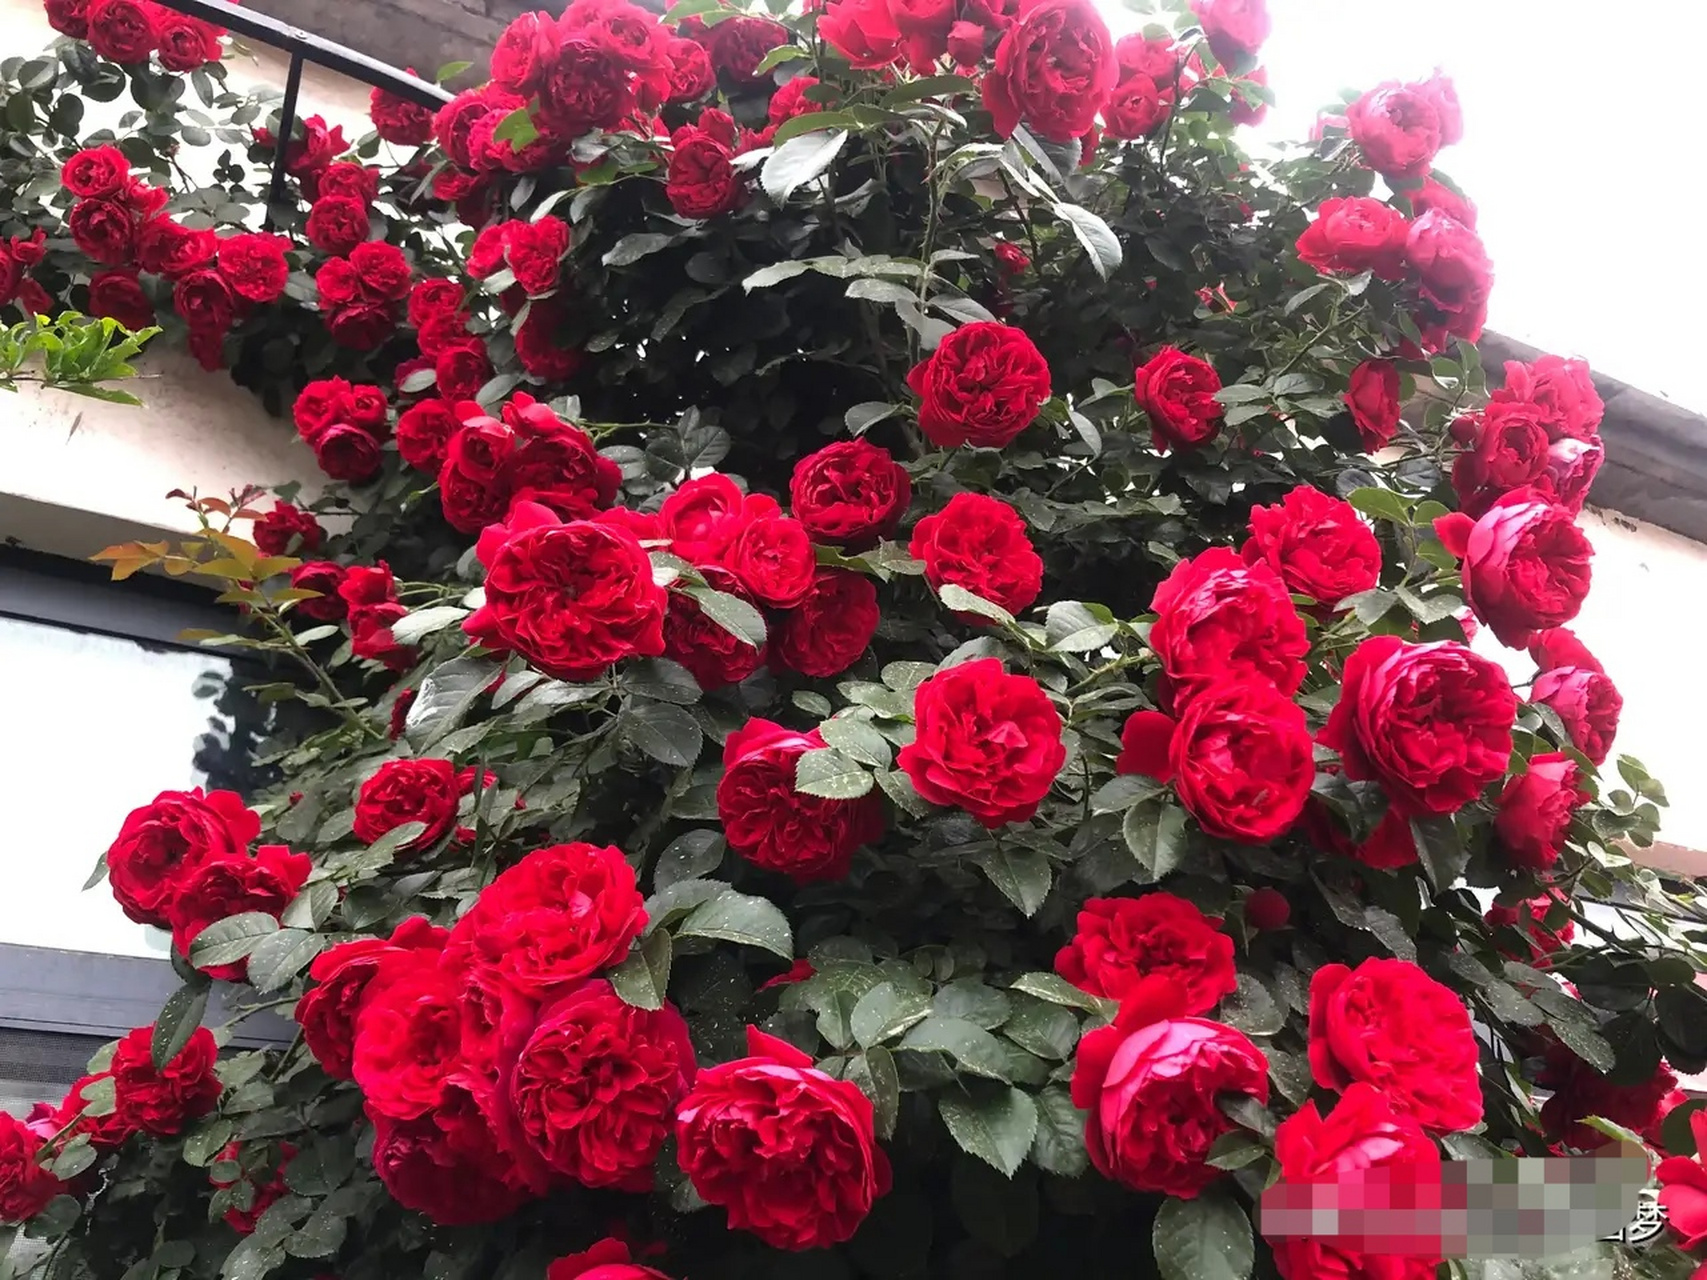 [小红花]佛罗伦蒂娜,也是我最喜欢的正红色月季之一,我种过的正红色